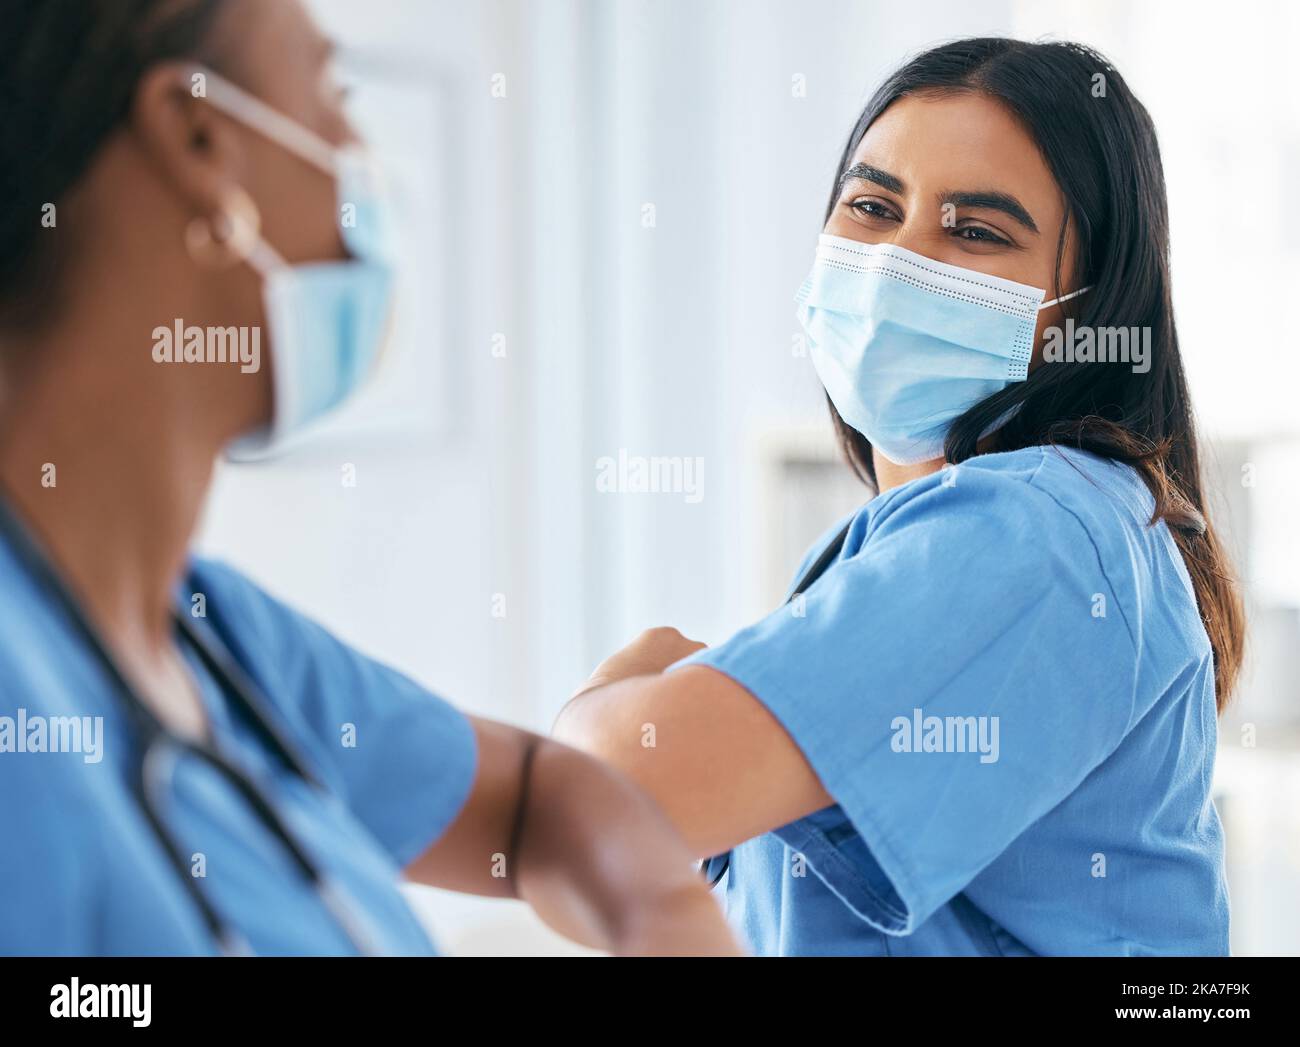 Covid, donne e medici gomito saluto in maschera chirurgica in ospedale o clinica durante la pandemia. Lavoro di squadra, operatore sanitario e medico Foto Stock